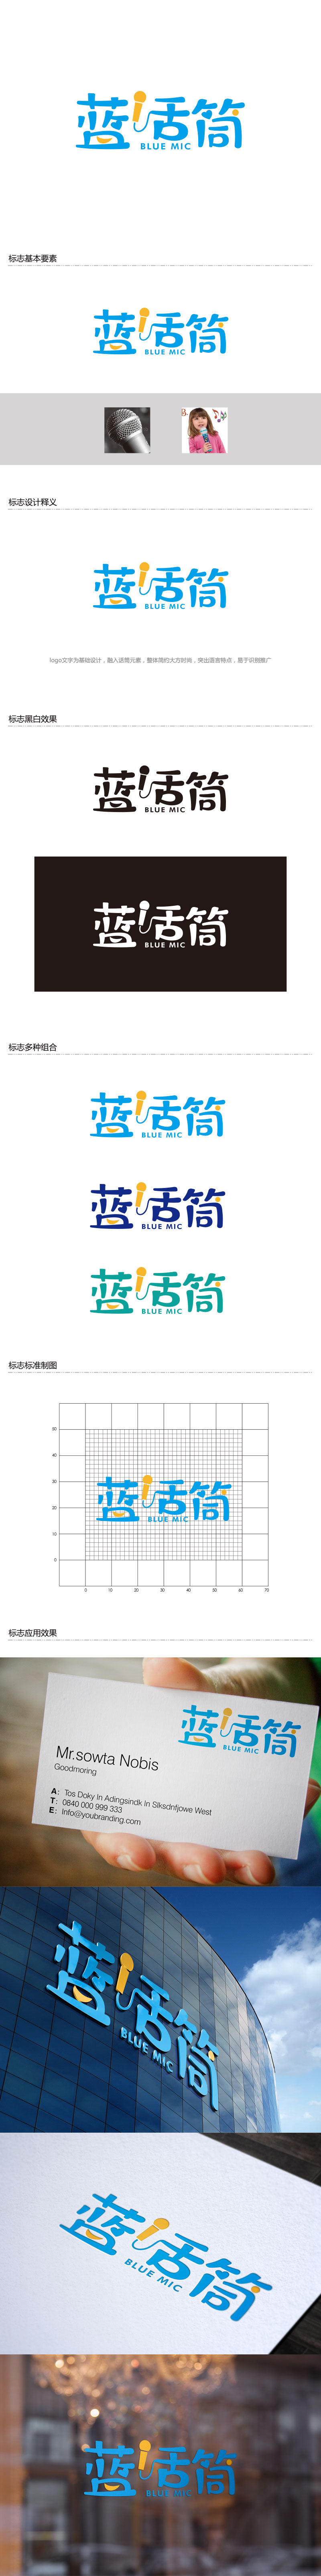 孙金泽的蓝话筒【重新整理设计需求】logo设计